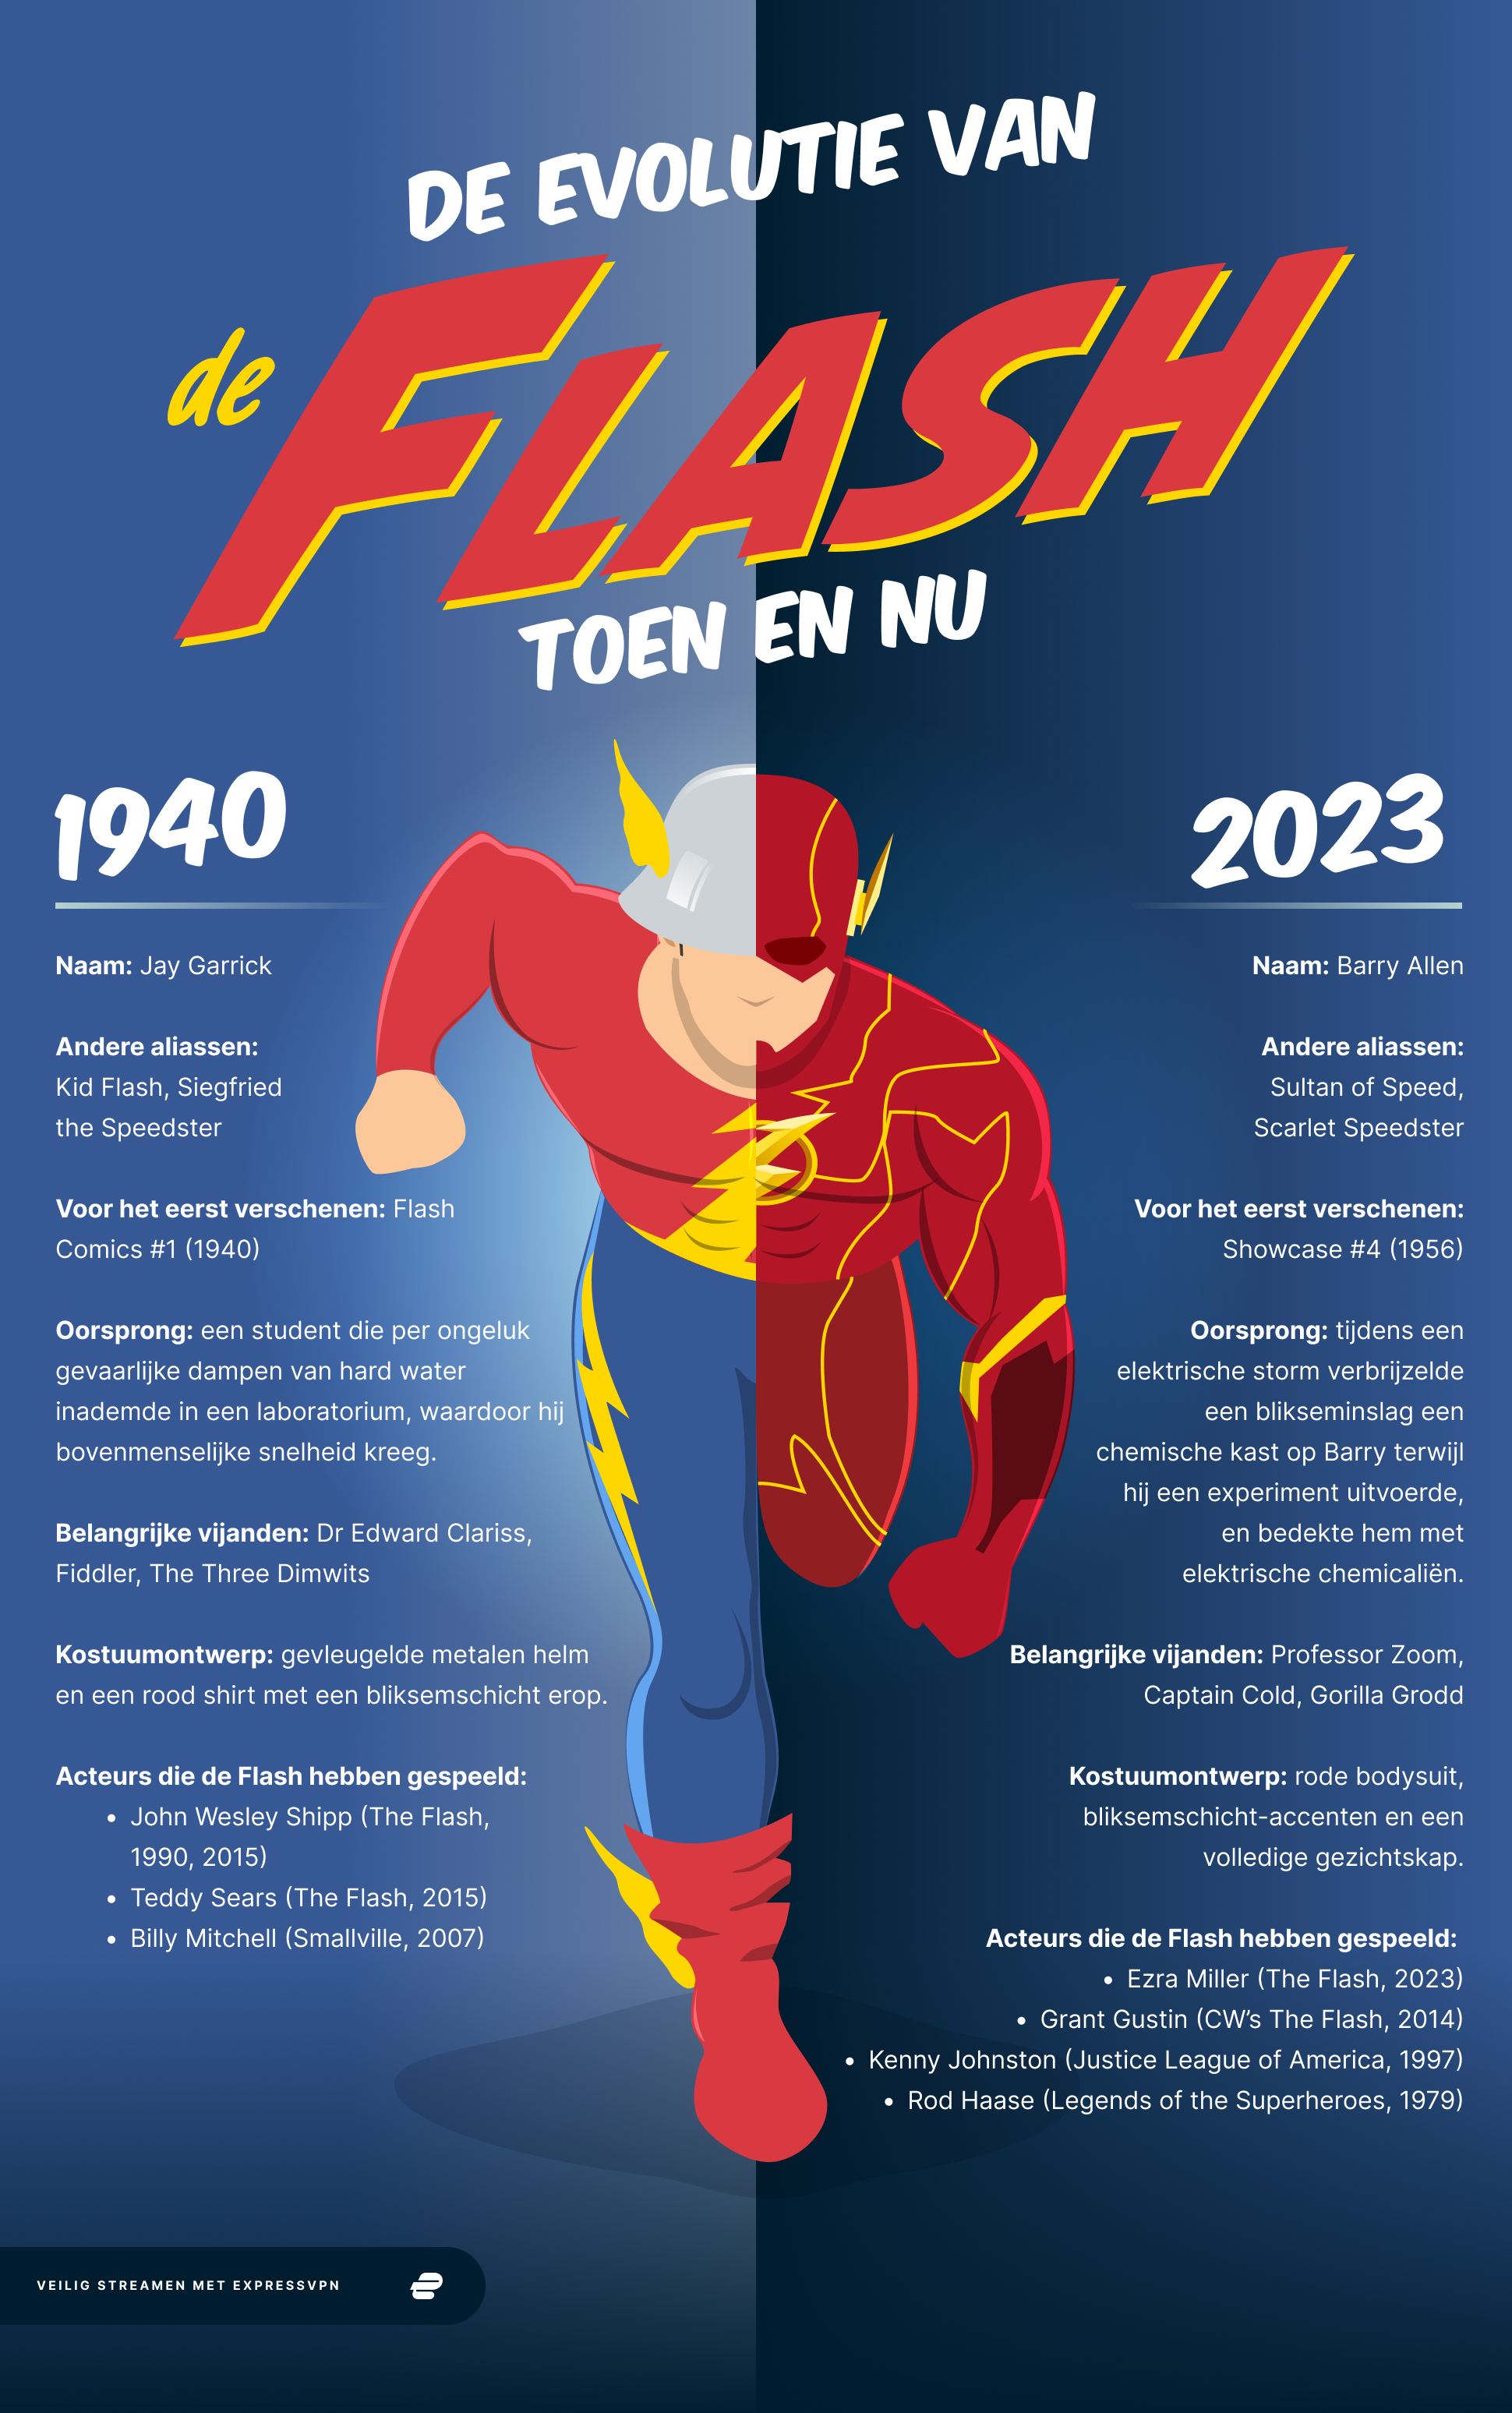 The Flash toen en nu